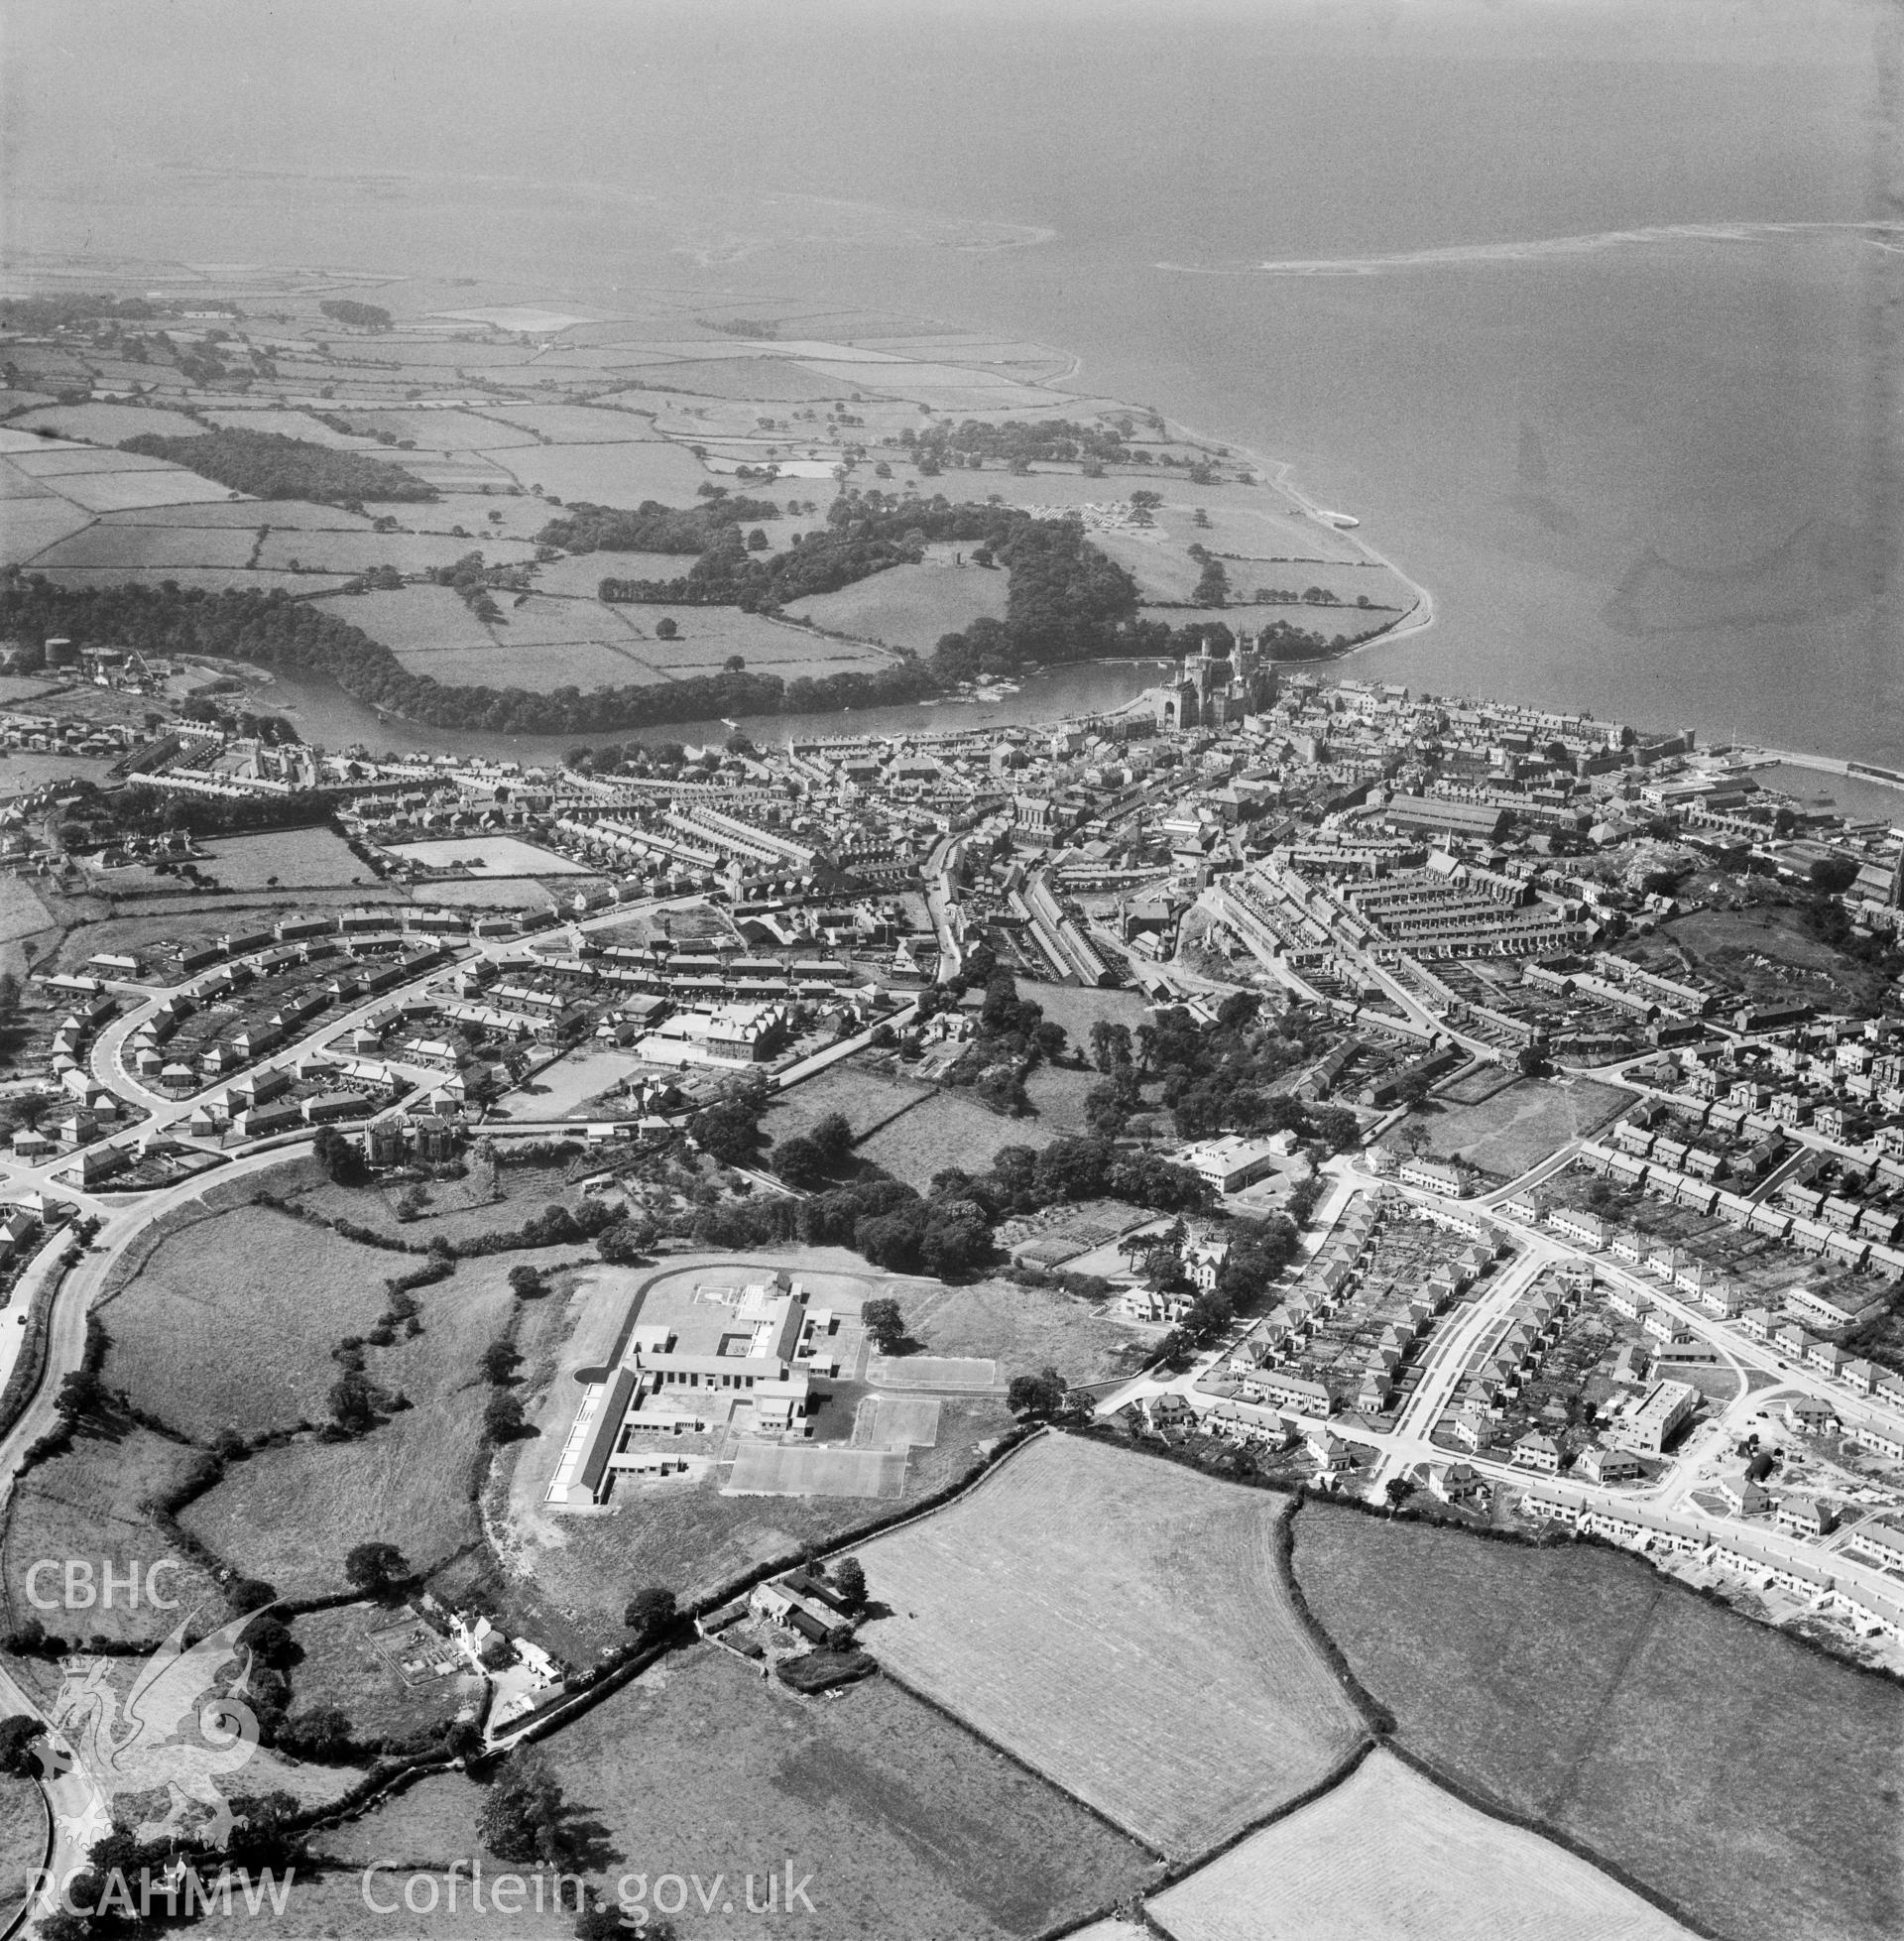 General view of Caernarfon showing Ysgol Maesincla school